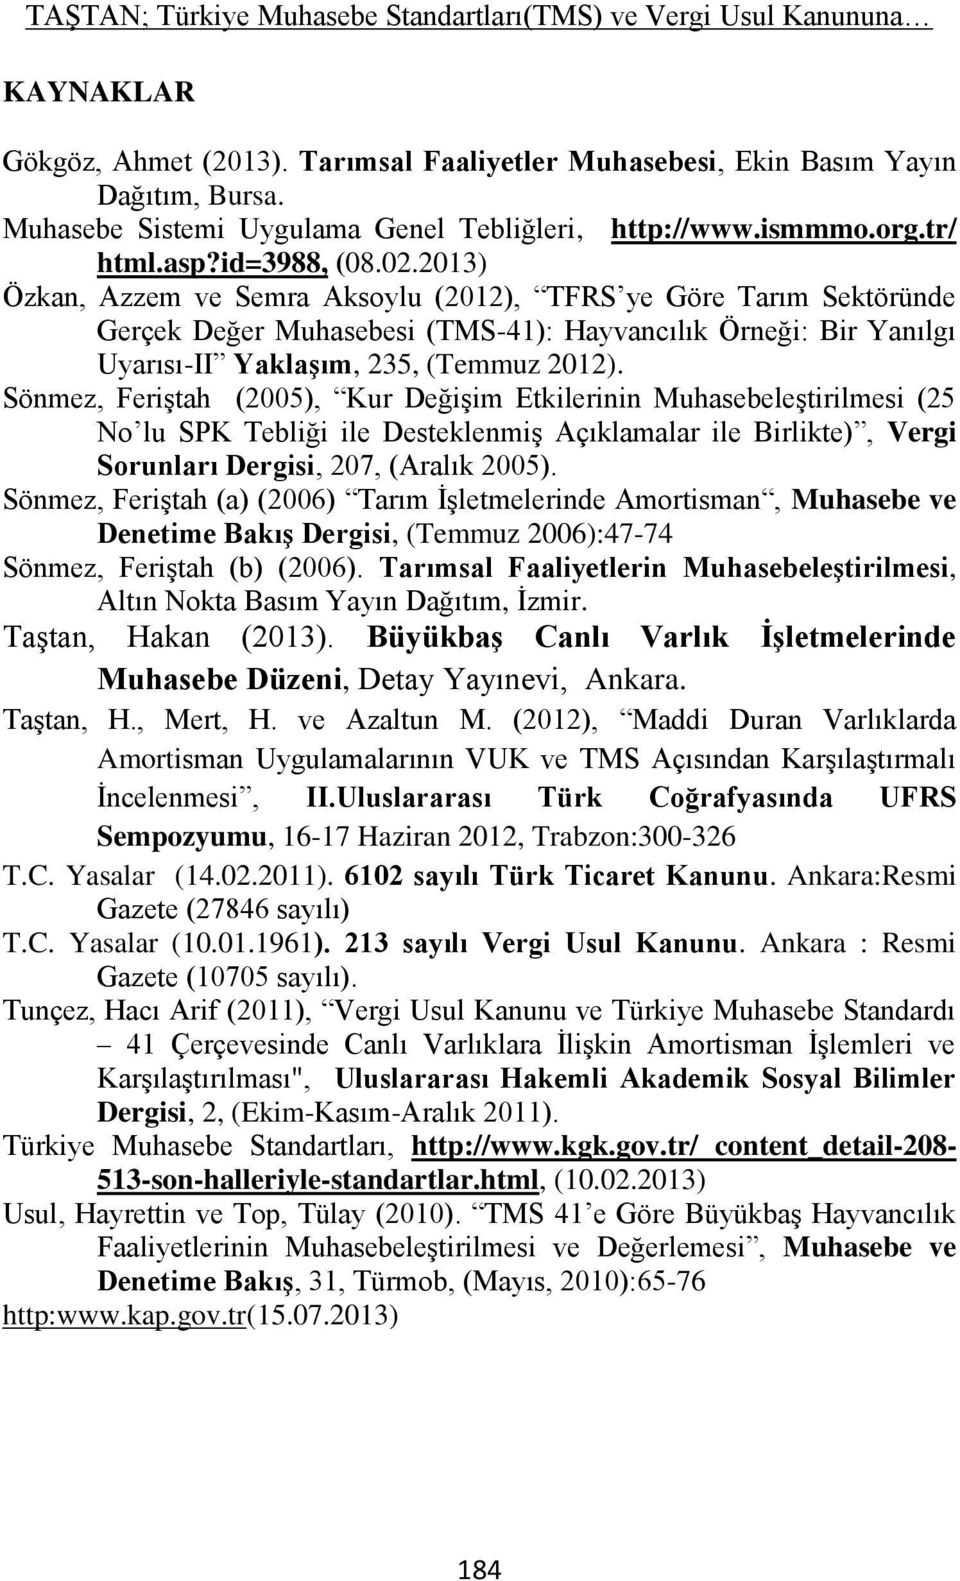 2013) Özkan, Azzem ve Semra Aksoylu (2012), TFRS ye Göre Tarım Sektöründe Gerçek Değer Muhasebesi (TMS-41): Hayvancılık Örneği: Bir Yanılgı Uyarısı-II YaklaĢım, 235, (Temmuz 2012).